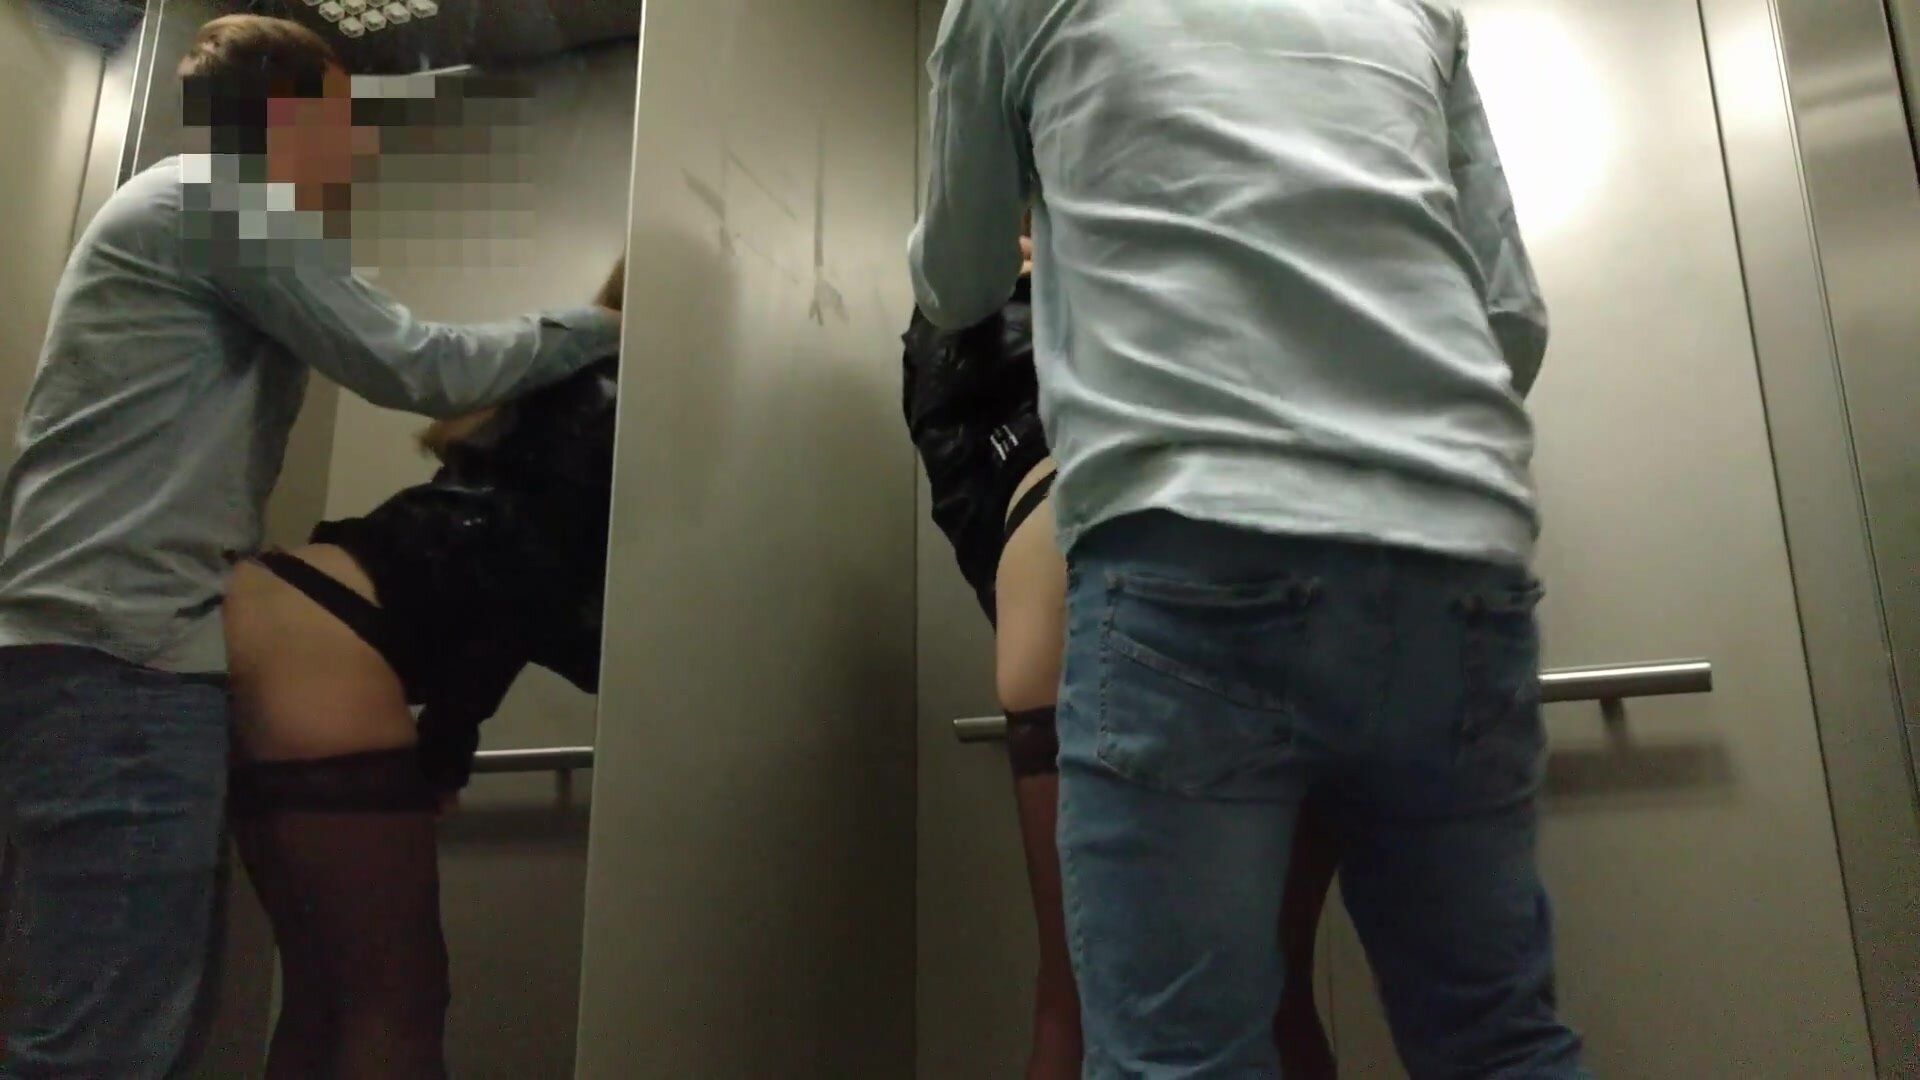 Voyeurstel doet riskante openbare seks in een lift afbeelding